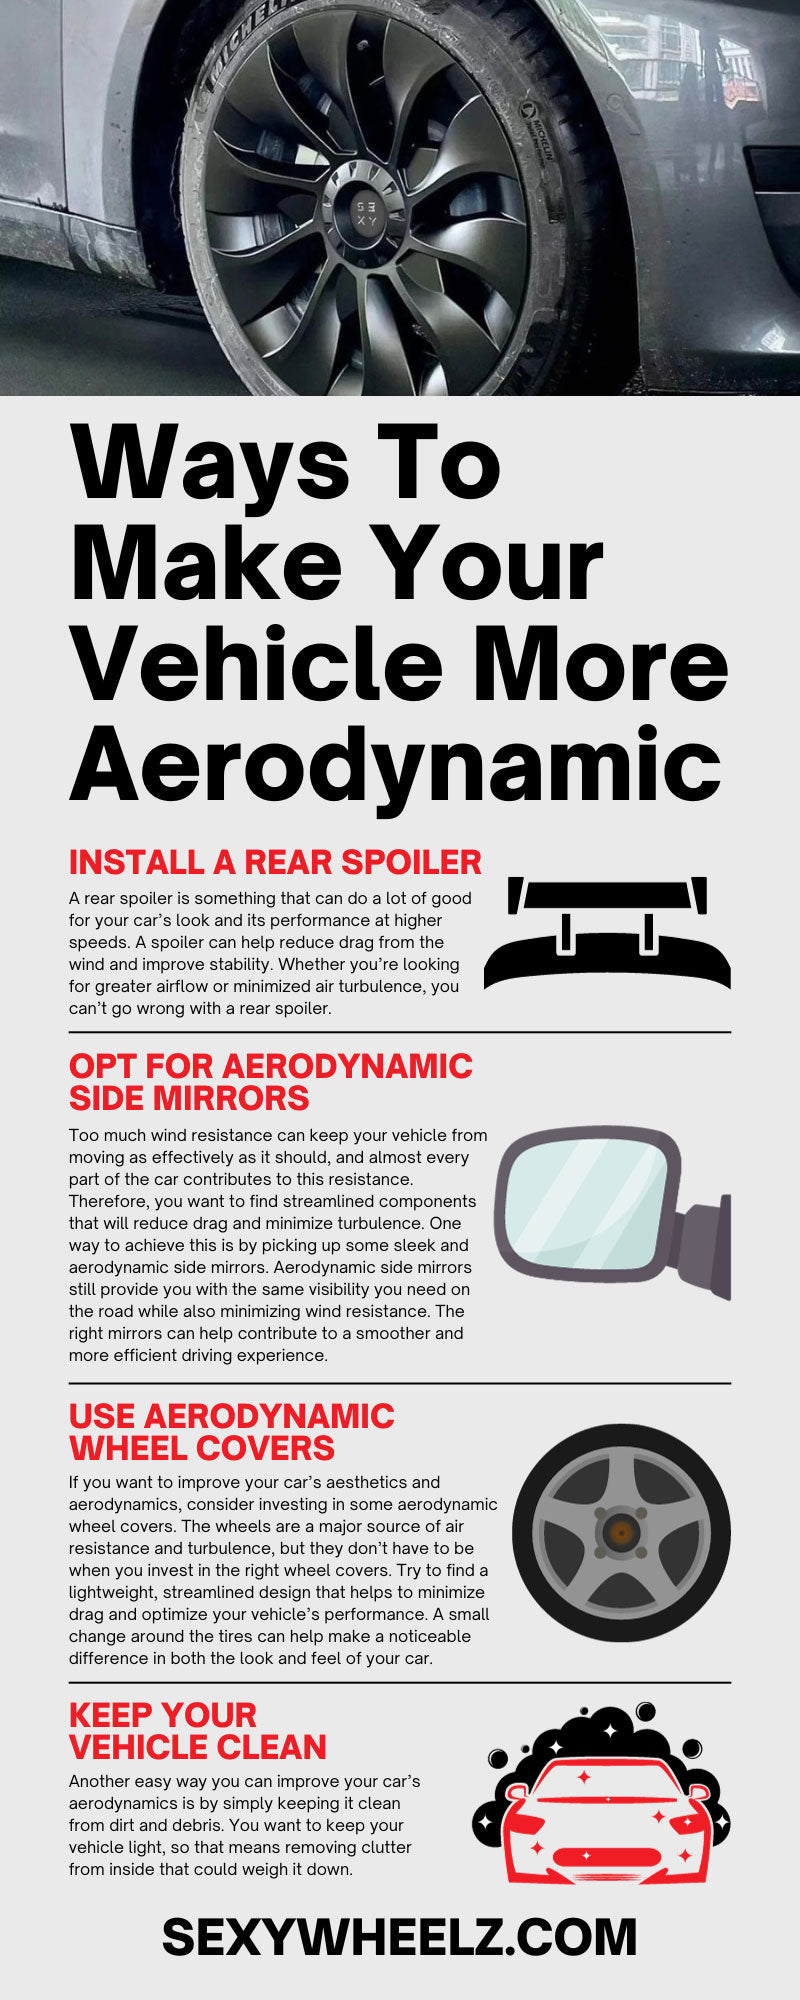 10 Ways To Make Your Vehicle More Aerodynamic